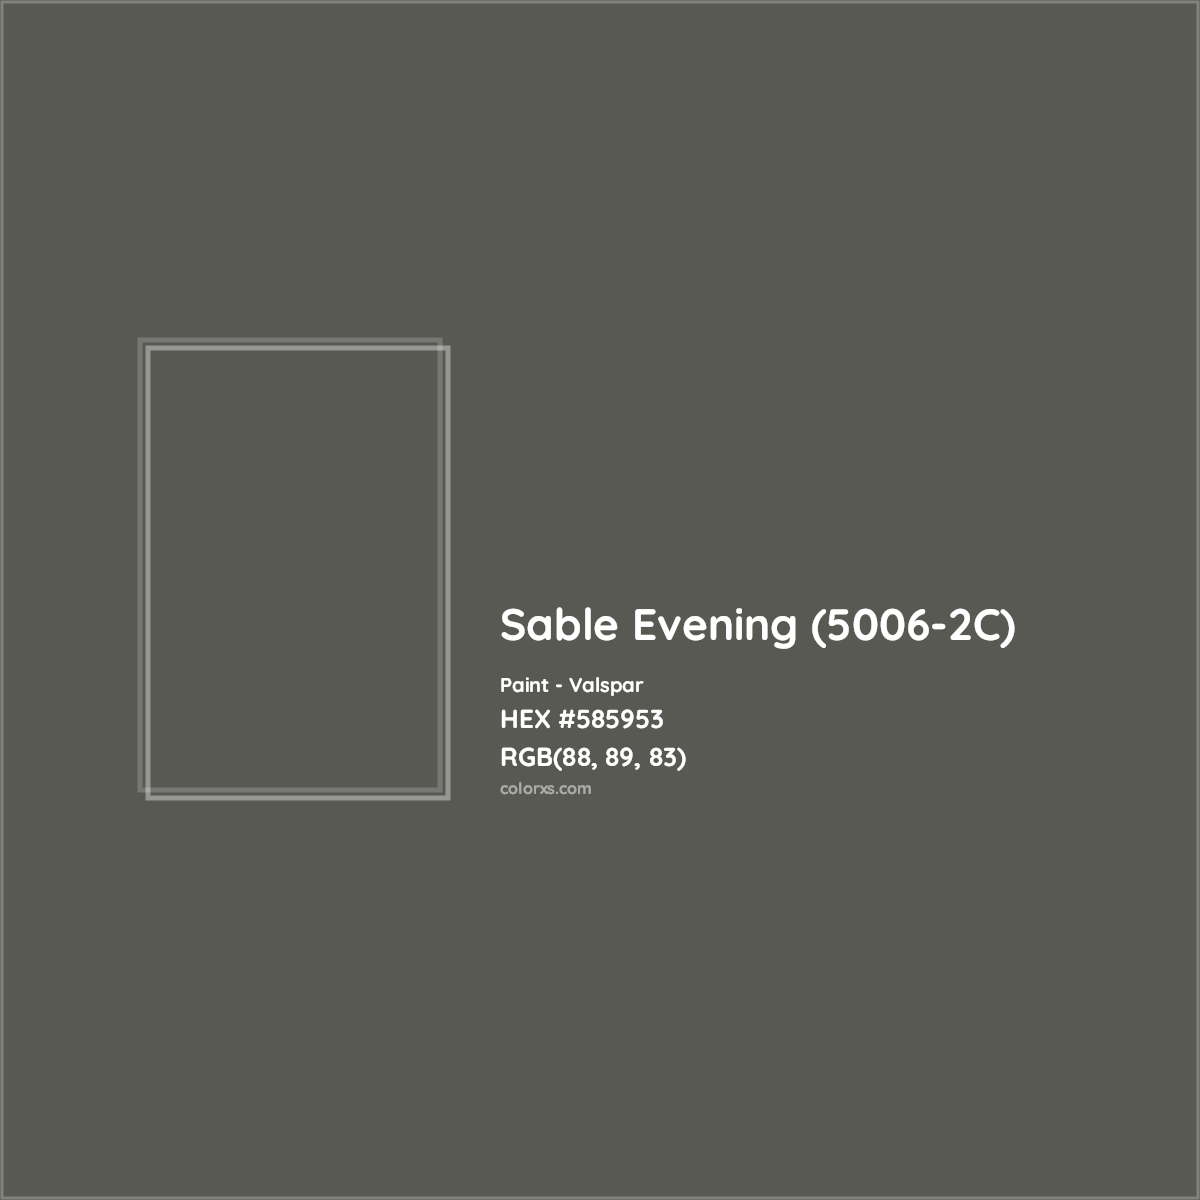 HEX #585953 Sable Evening (5006-2C) Paint Valspar - Color Code